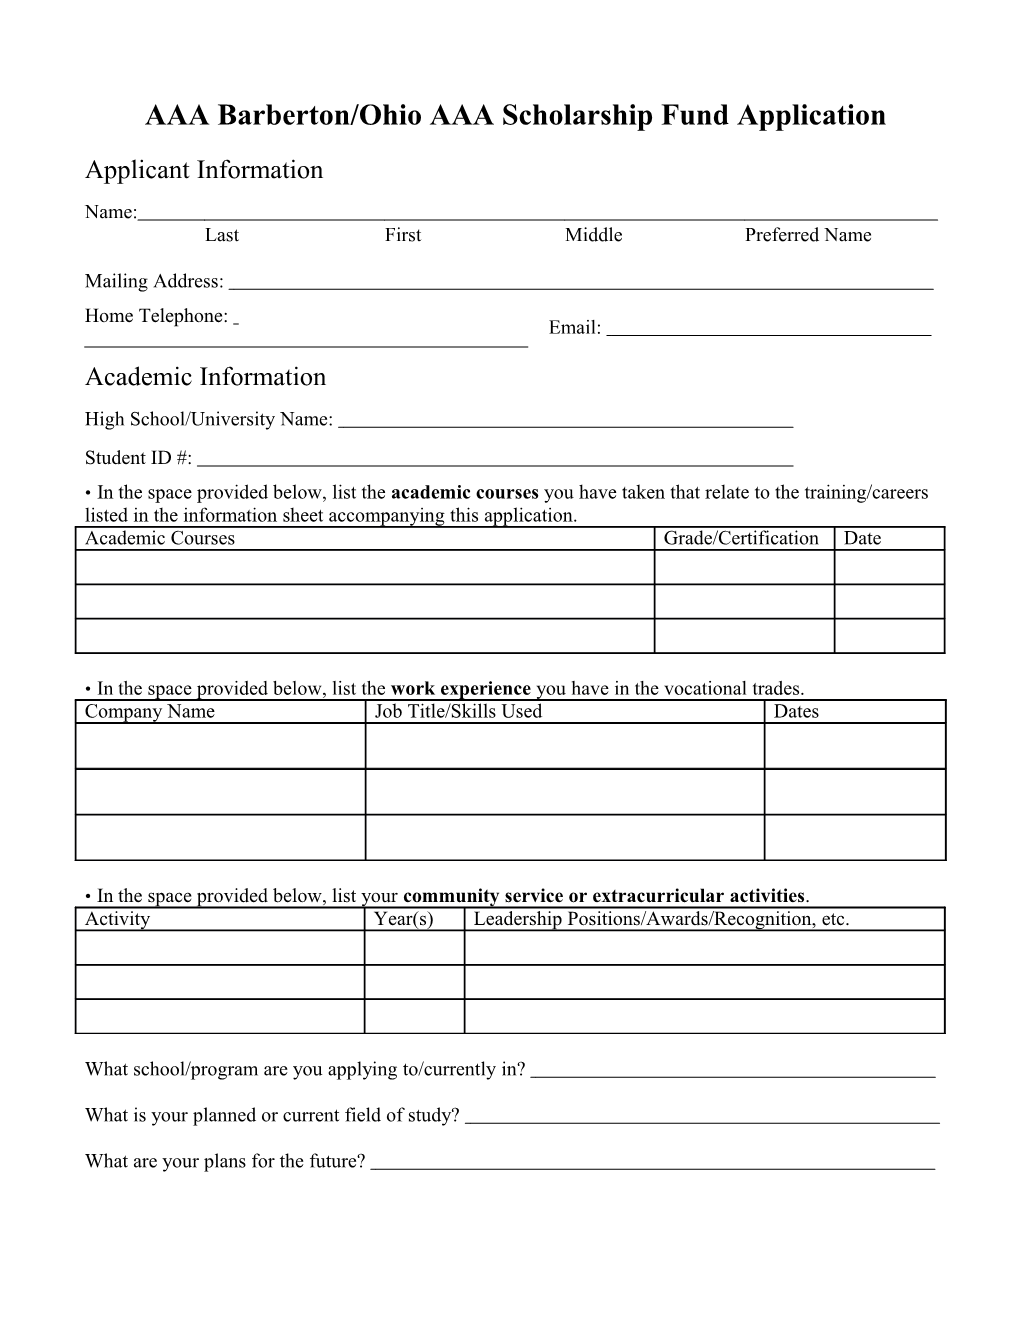 AAA Barberton/Ohio AAA Scholarship Fund Application Fact Sheet